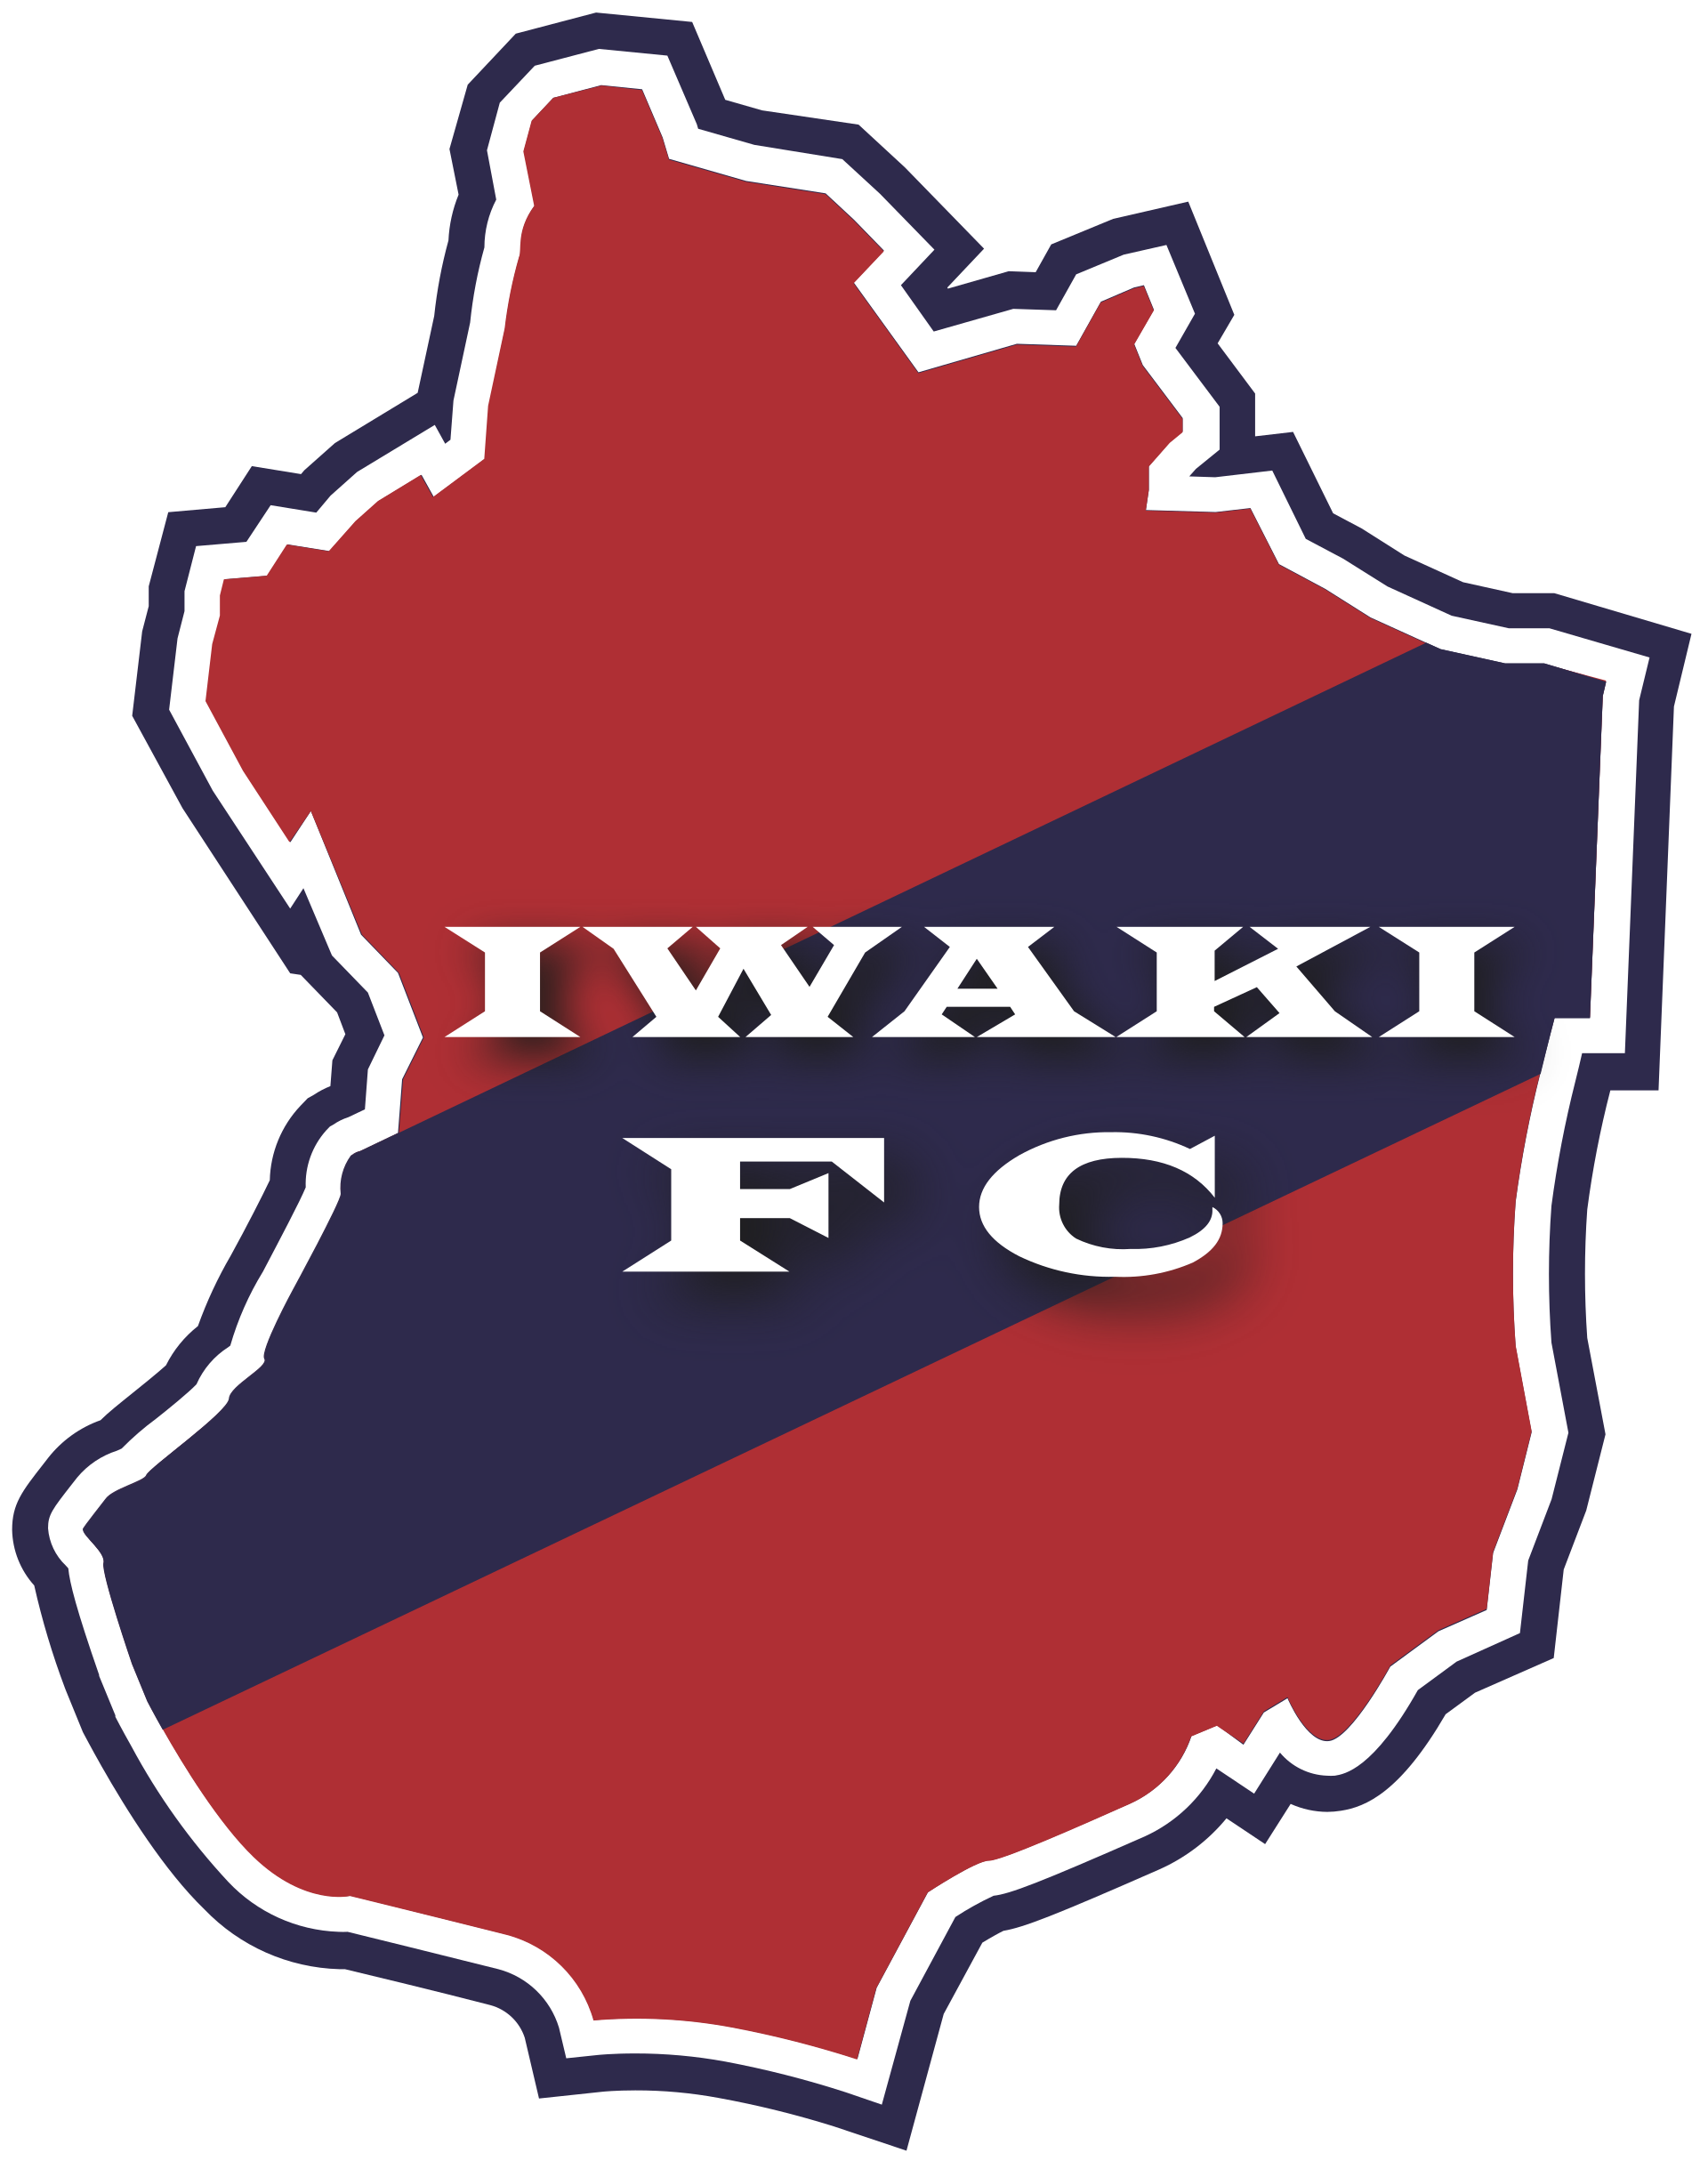 Wappen ehemals Iwaki FC  113103